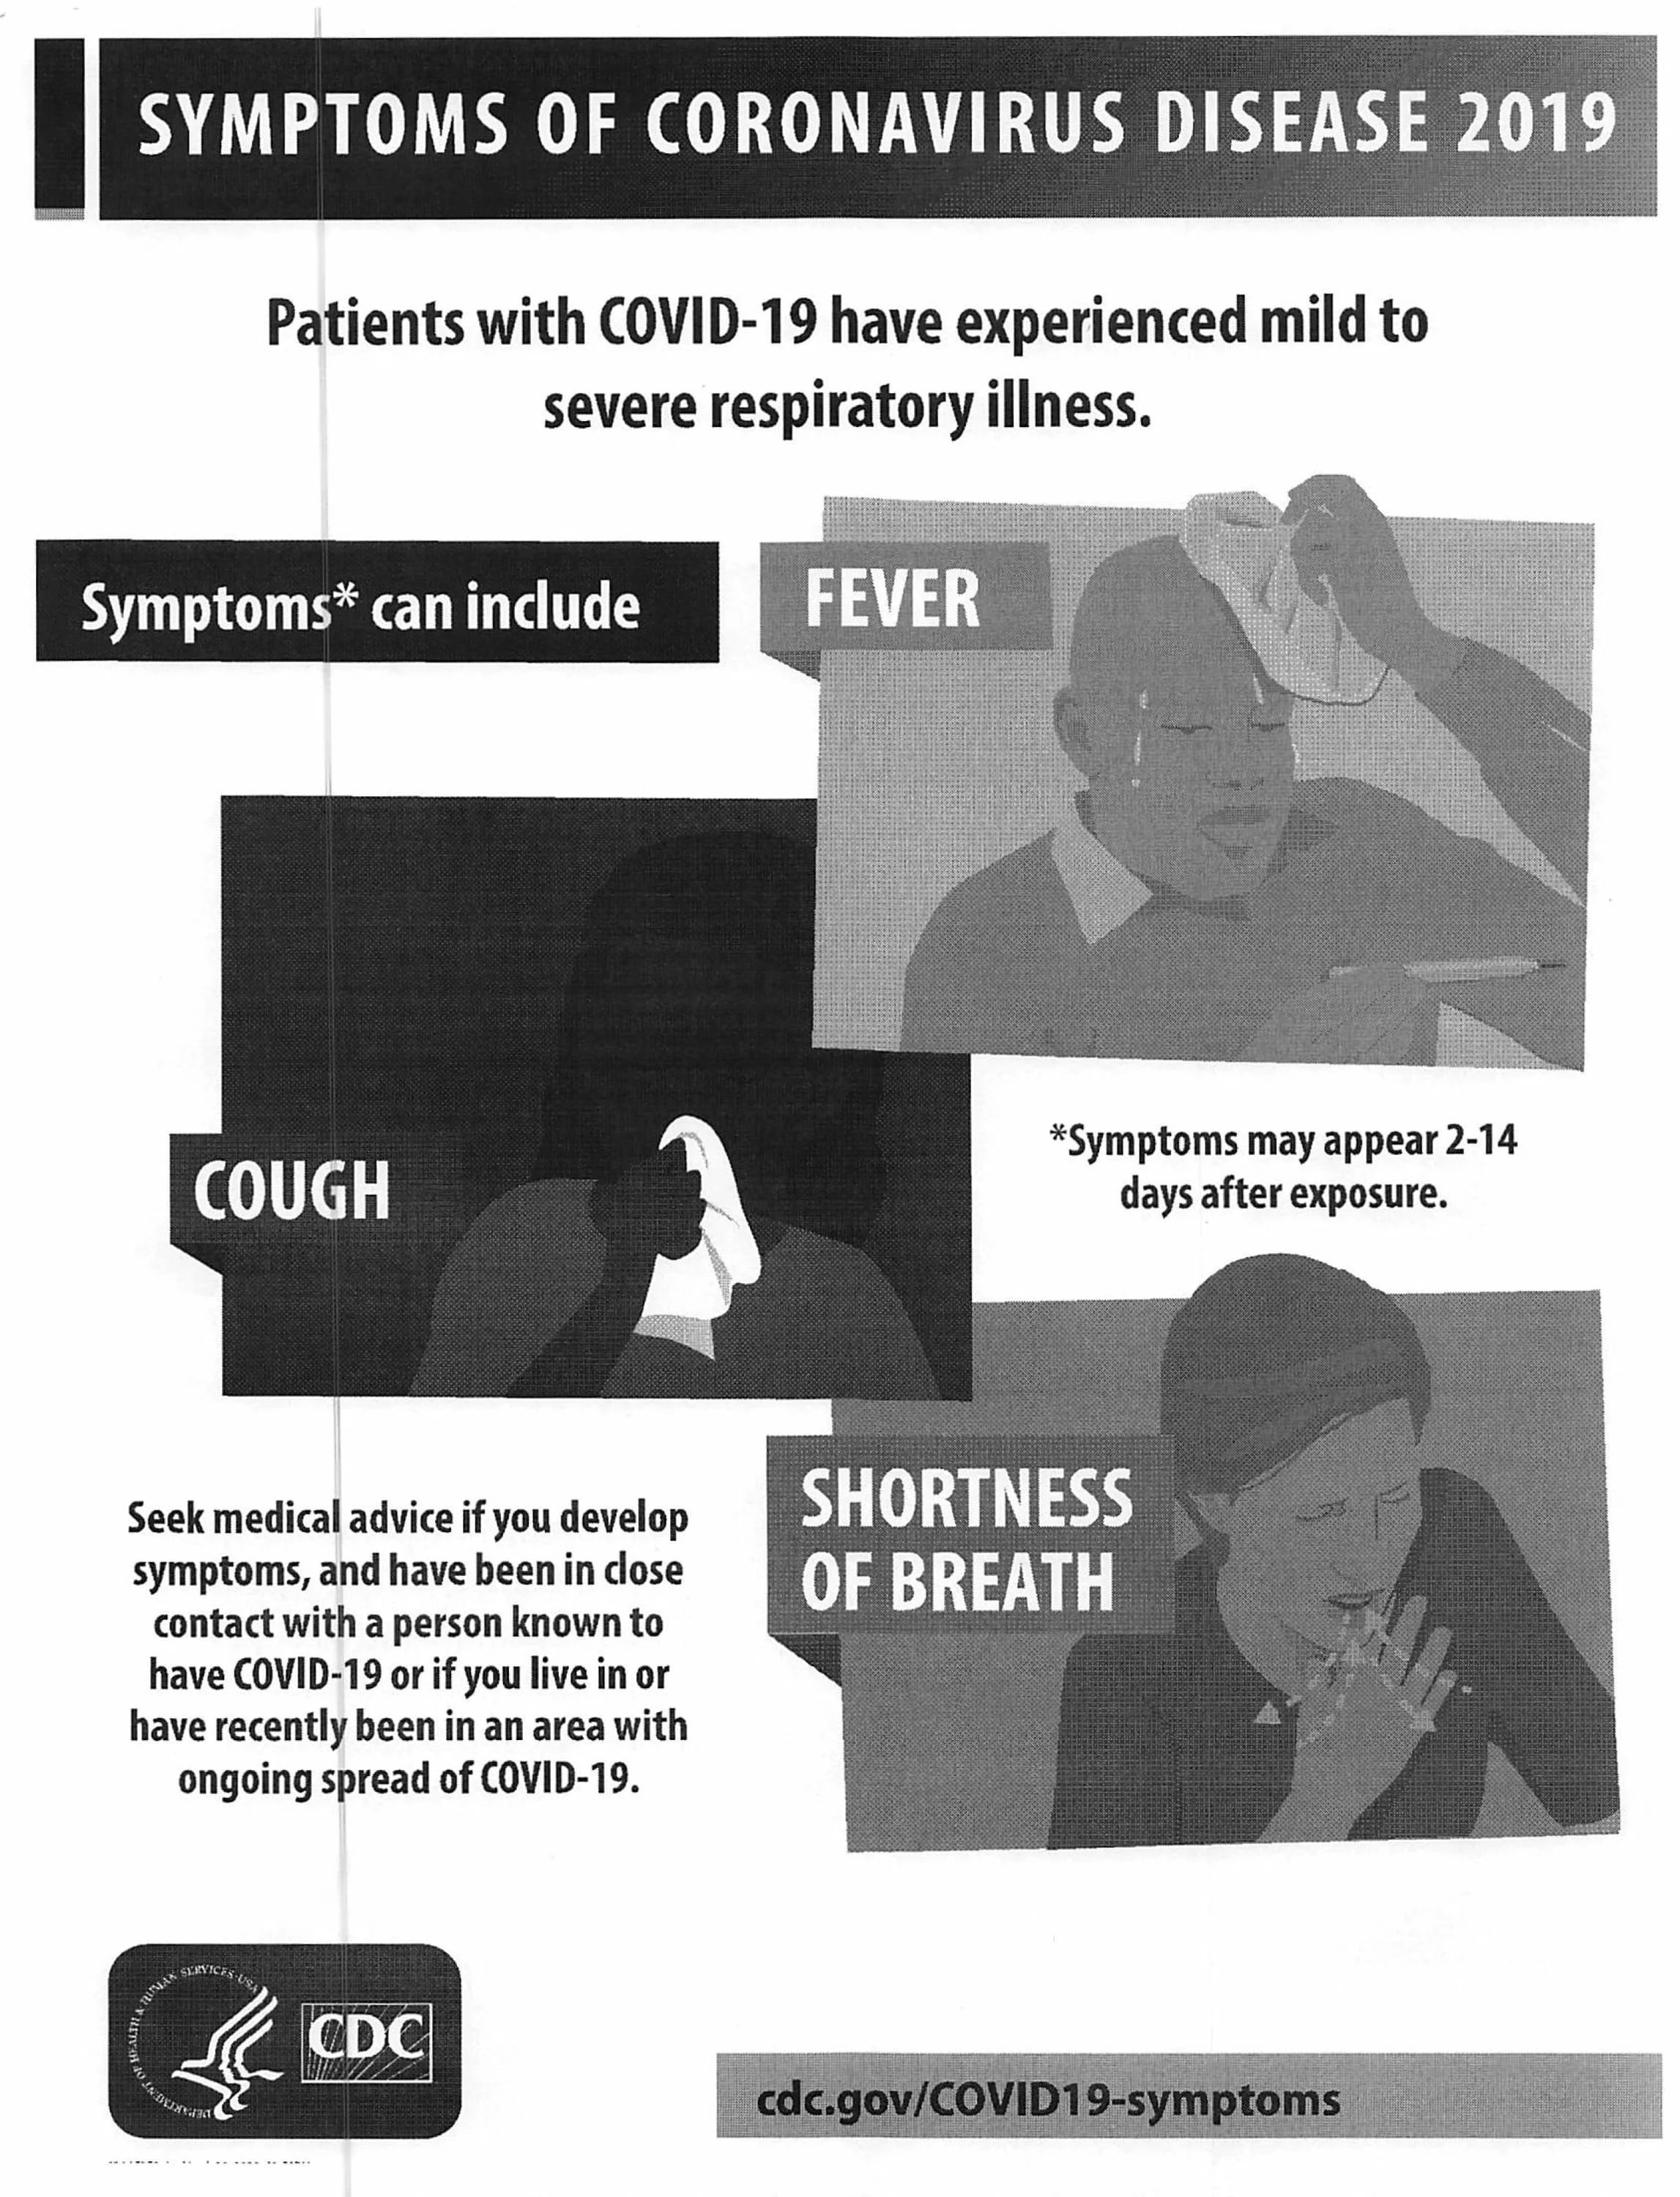 COVID-19 SYMPTOMS